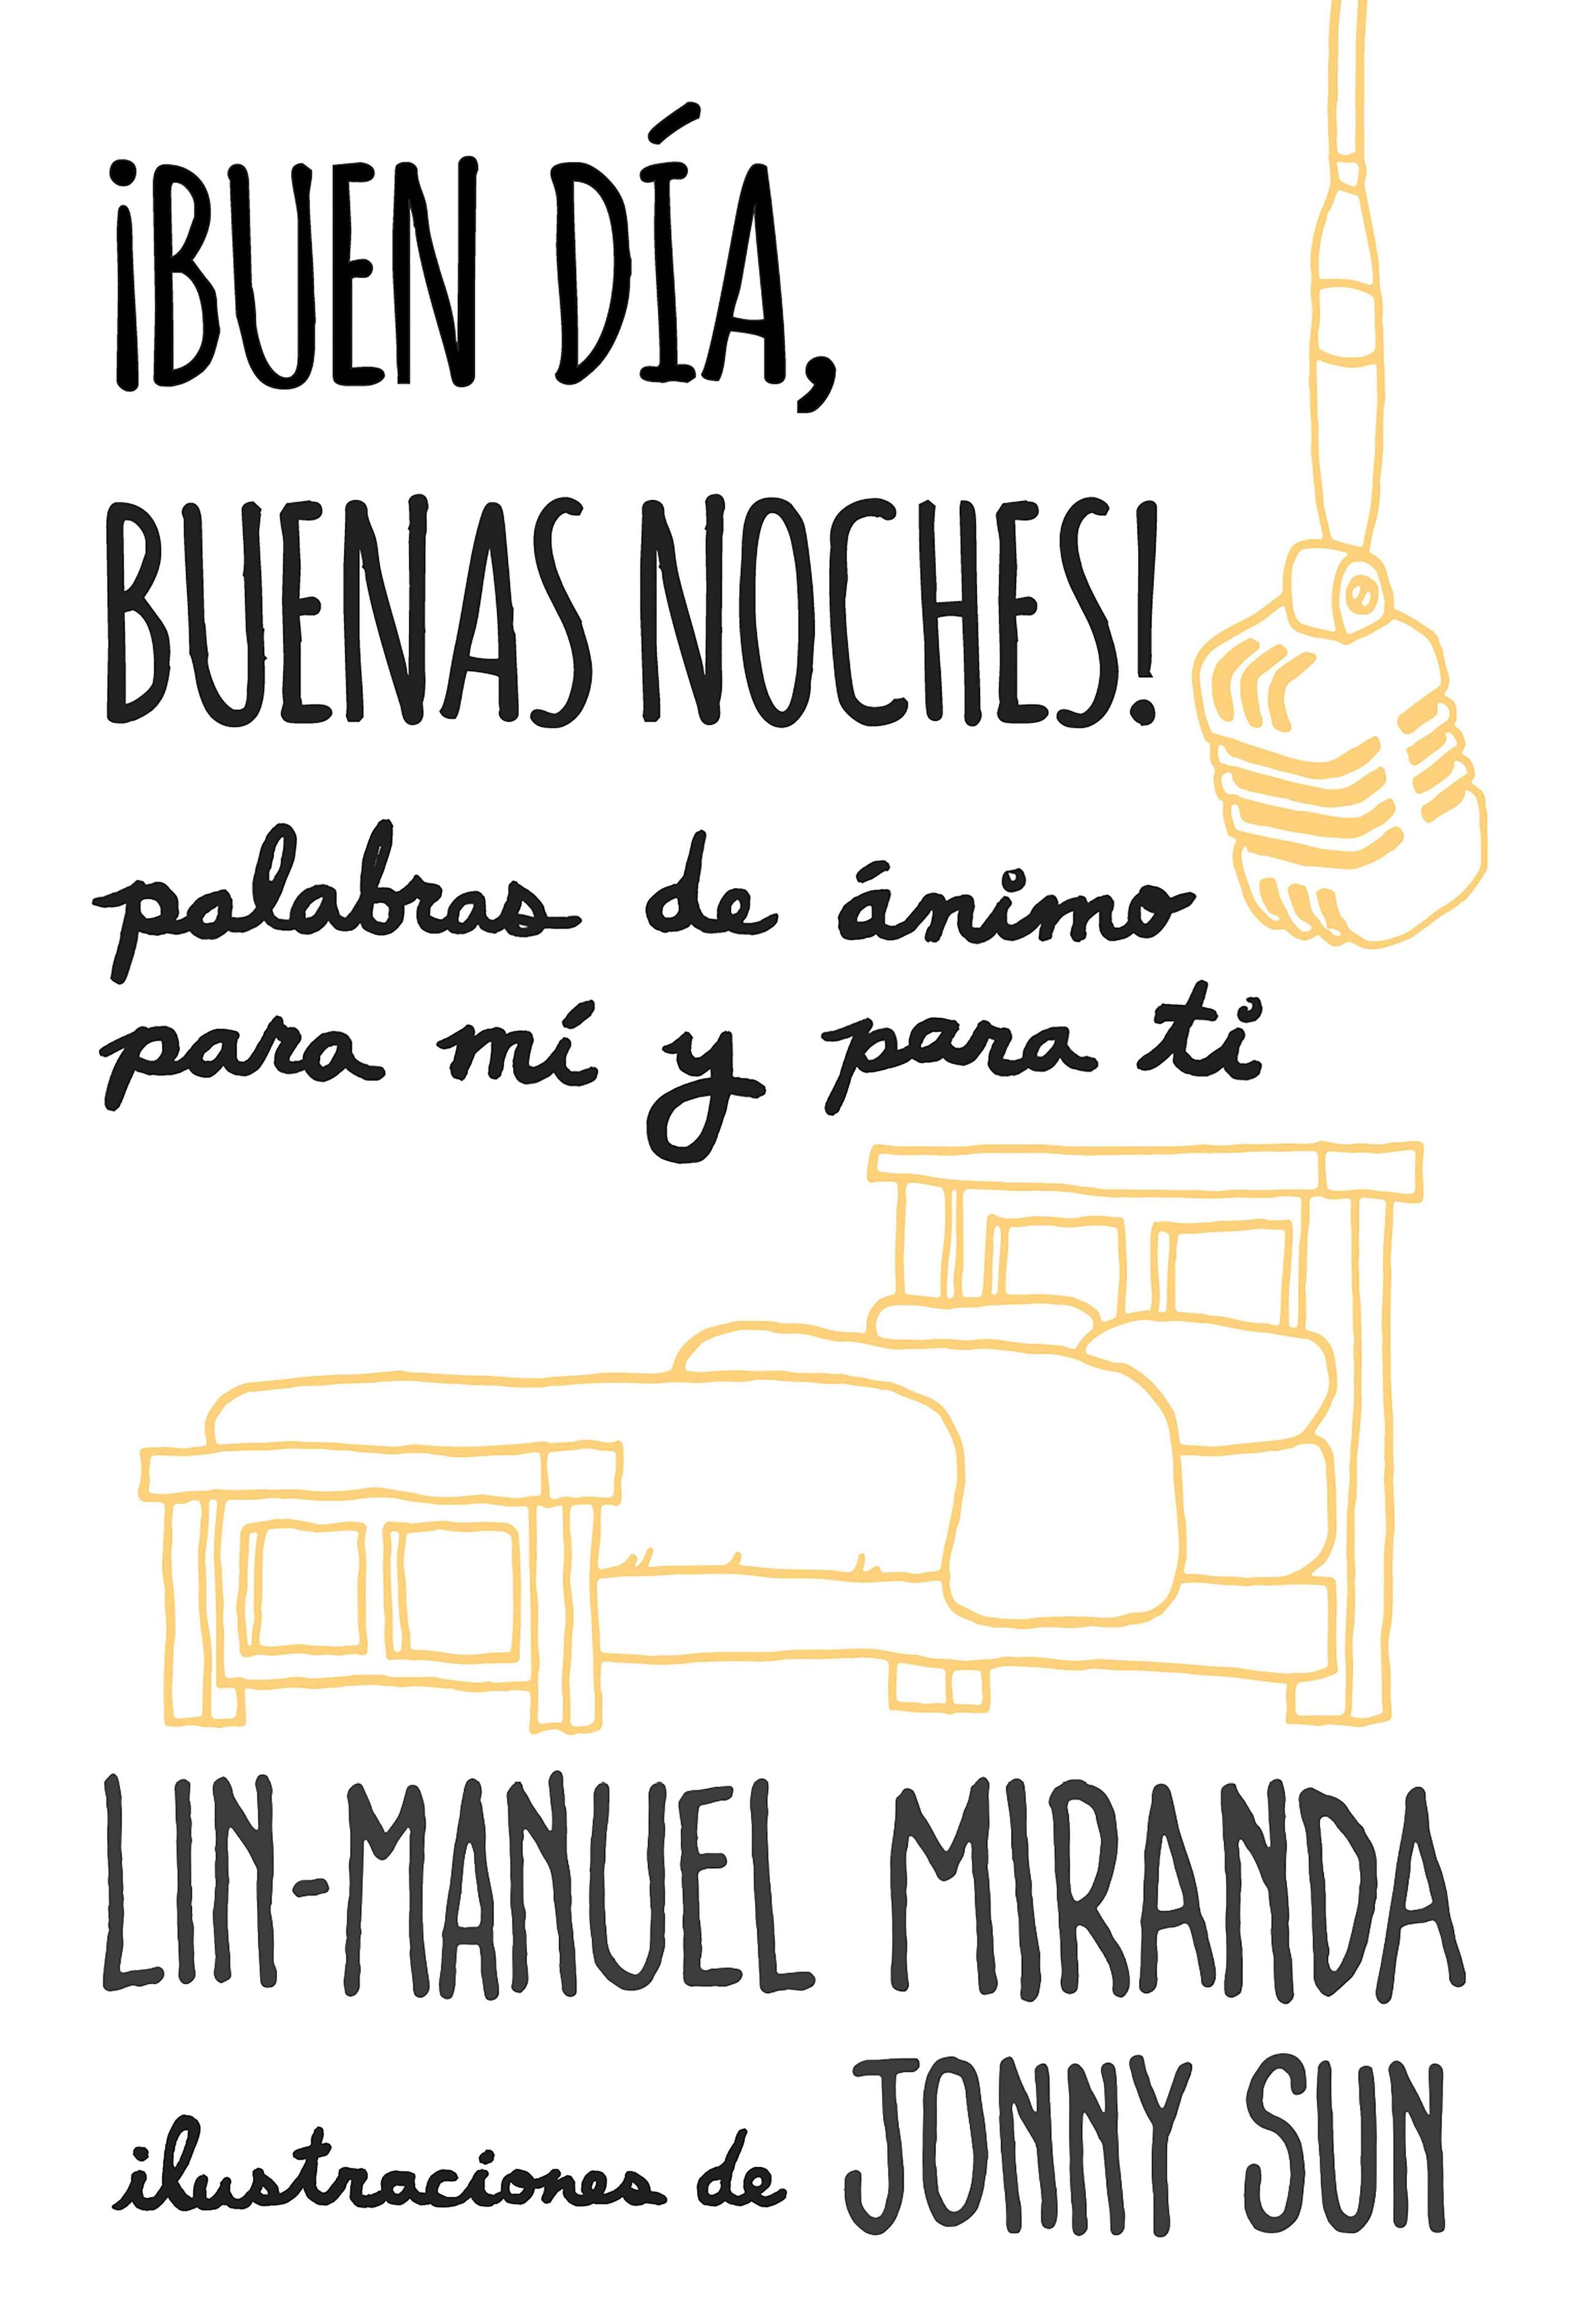 Libro de Lin-Manuel Miranda, "¡Buenos días, buenas noches!". (Suministrada)